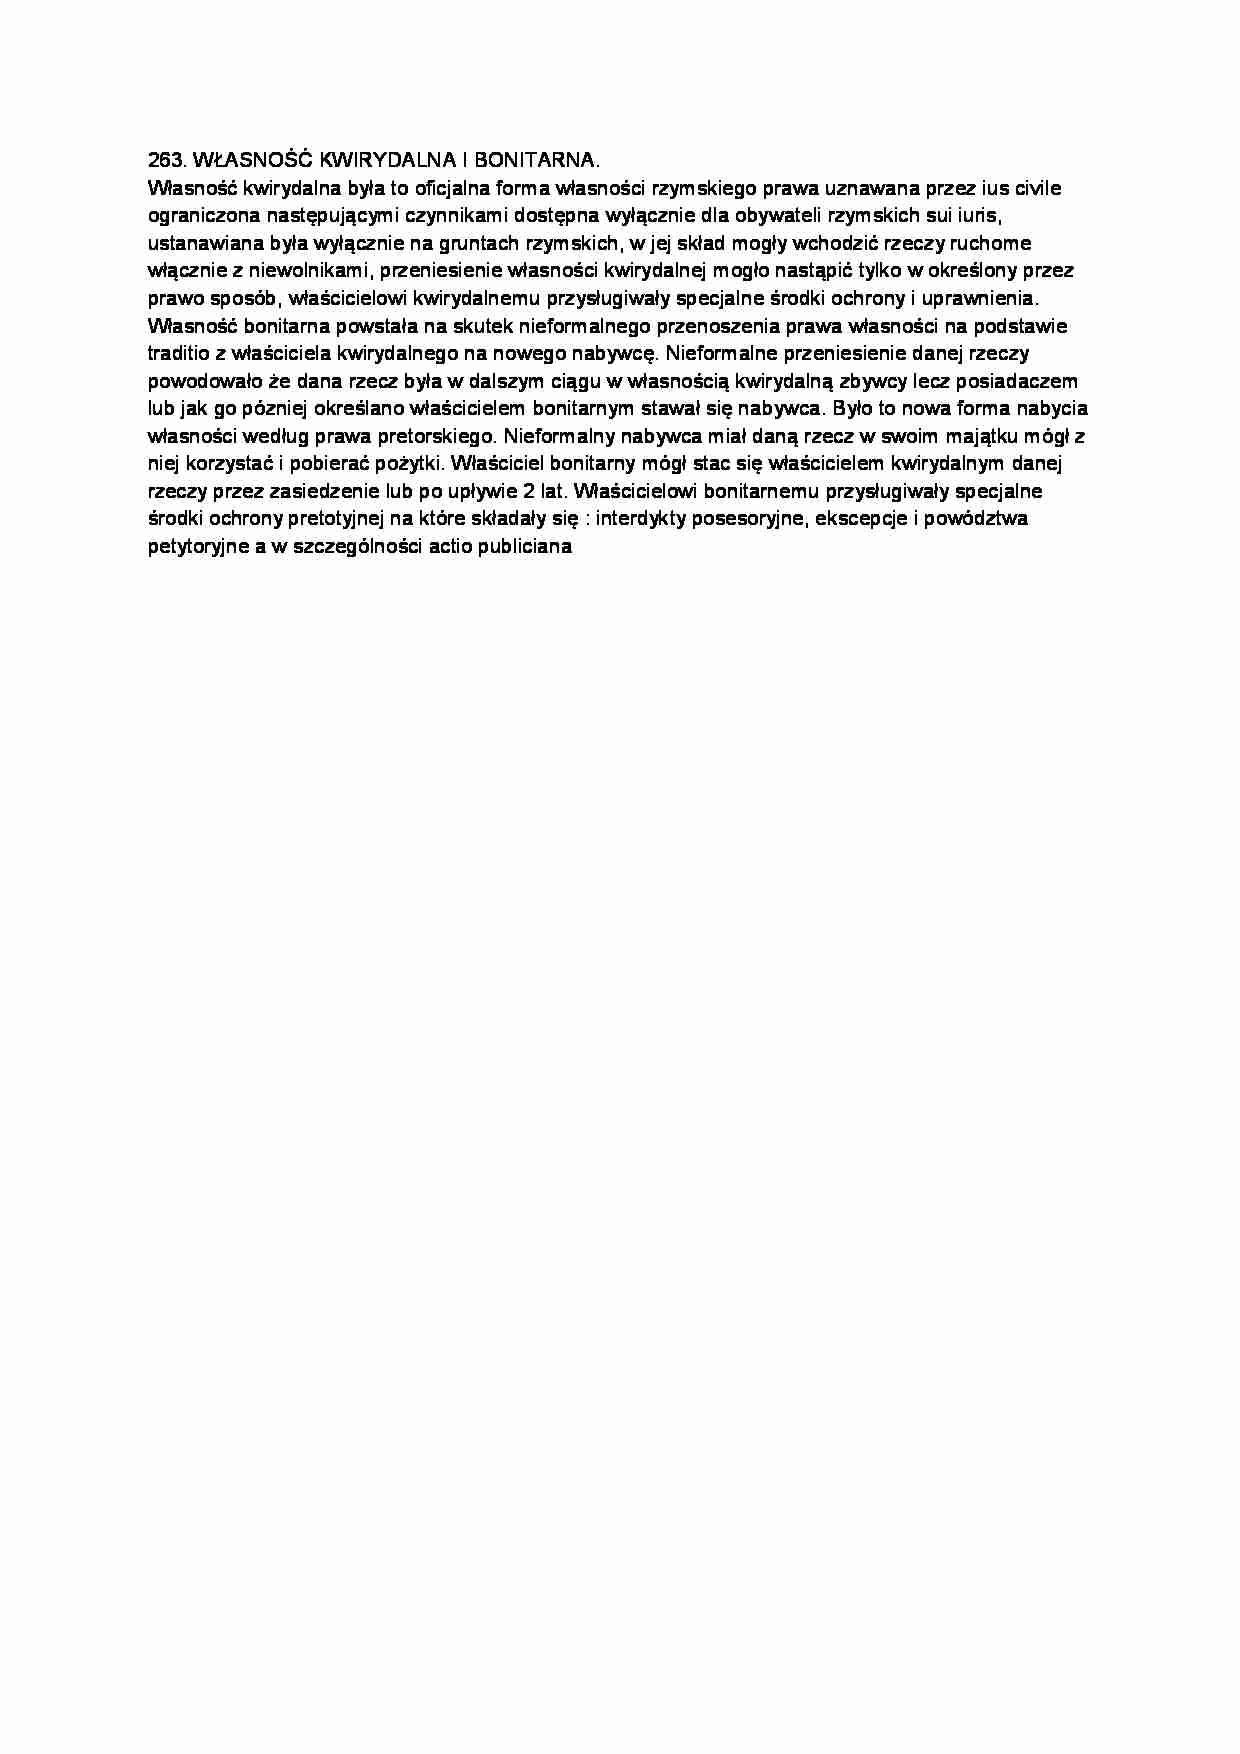 Własność kwirydalna i bonitarna-opracowanie - strona 1